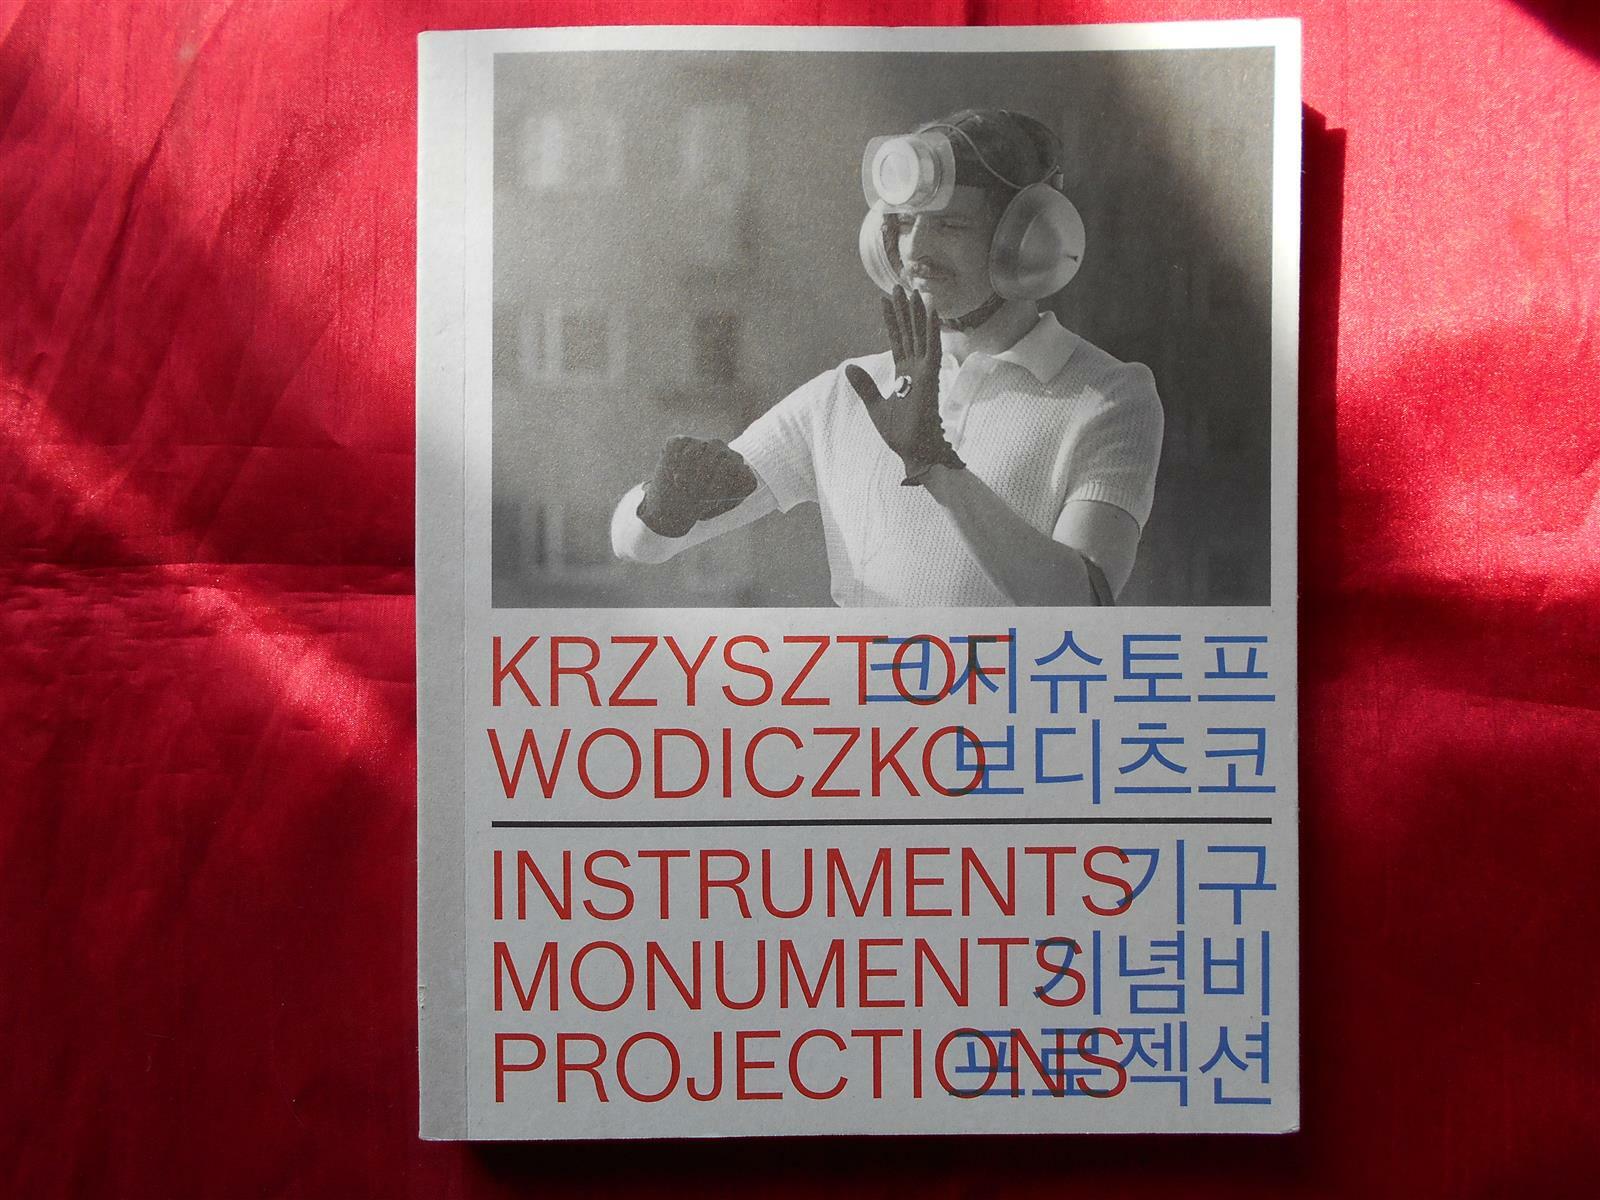 크지슈토프 보디츠코 = Krzysztof Wodiczko  instrumets monuments projections: 기구 기념비 프로젝션 